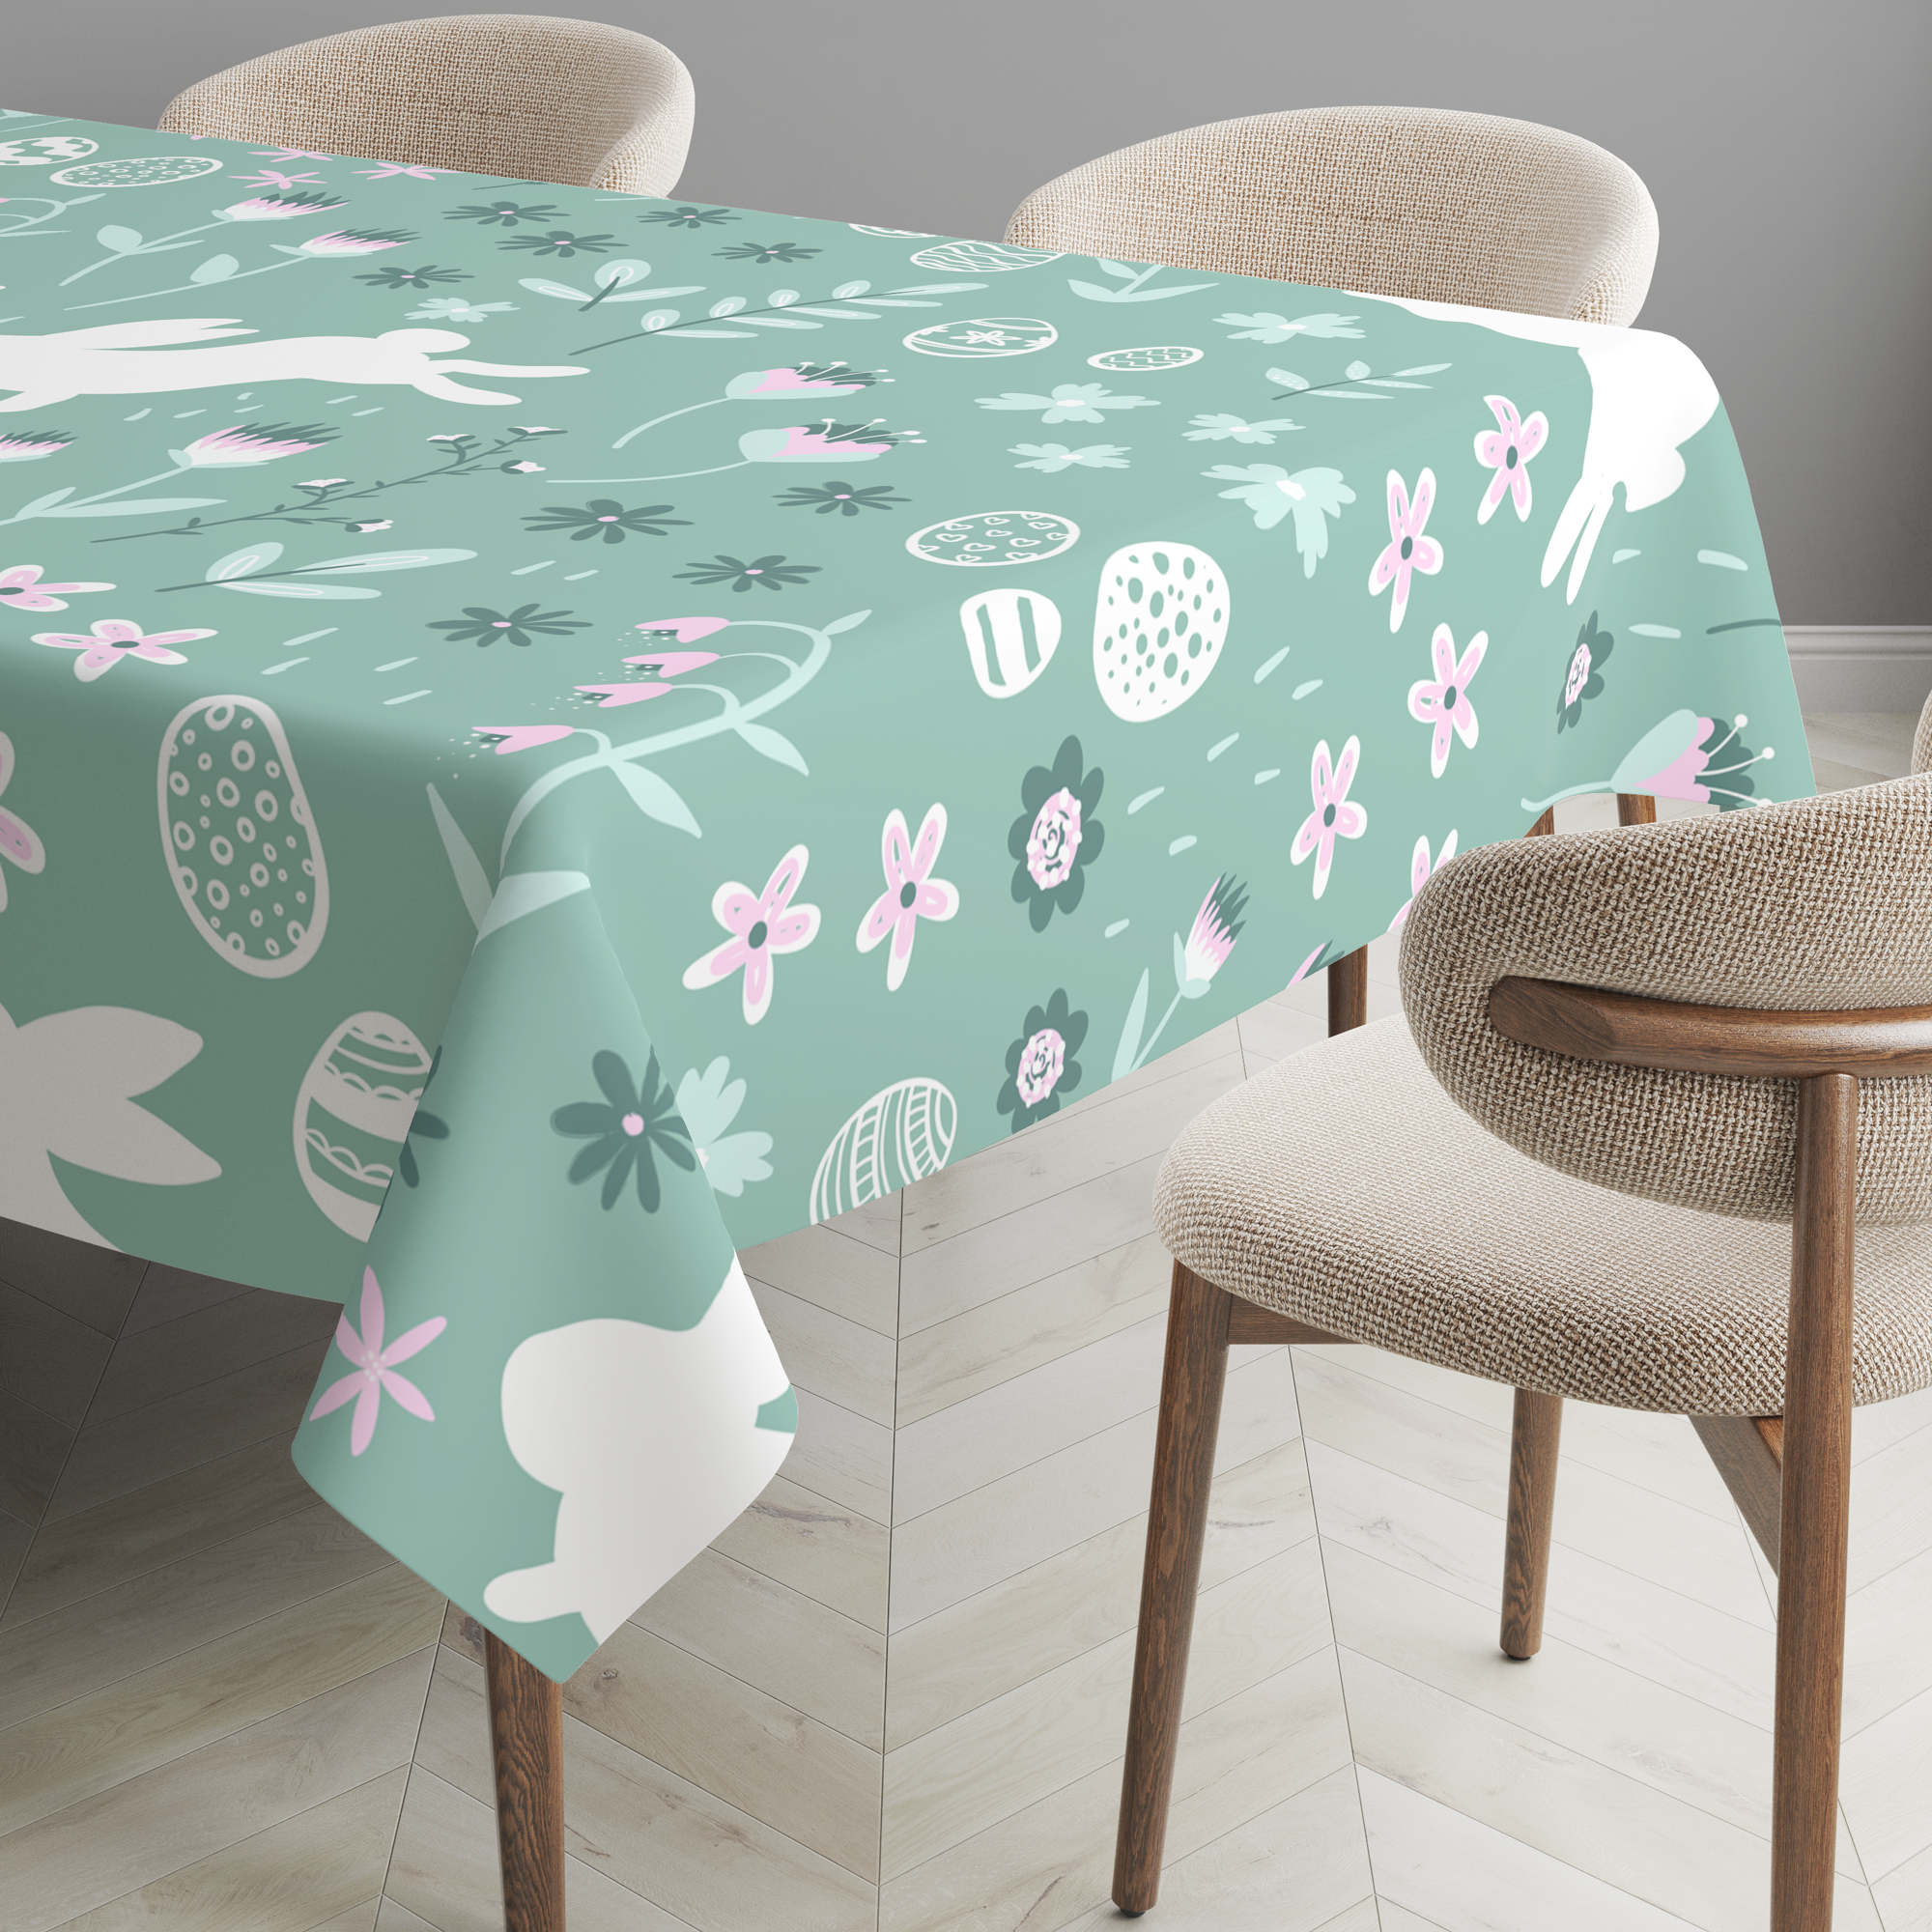 426-PVC-Tablecloth-010002.png